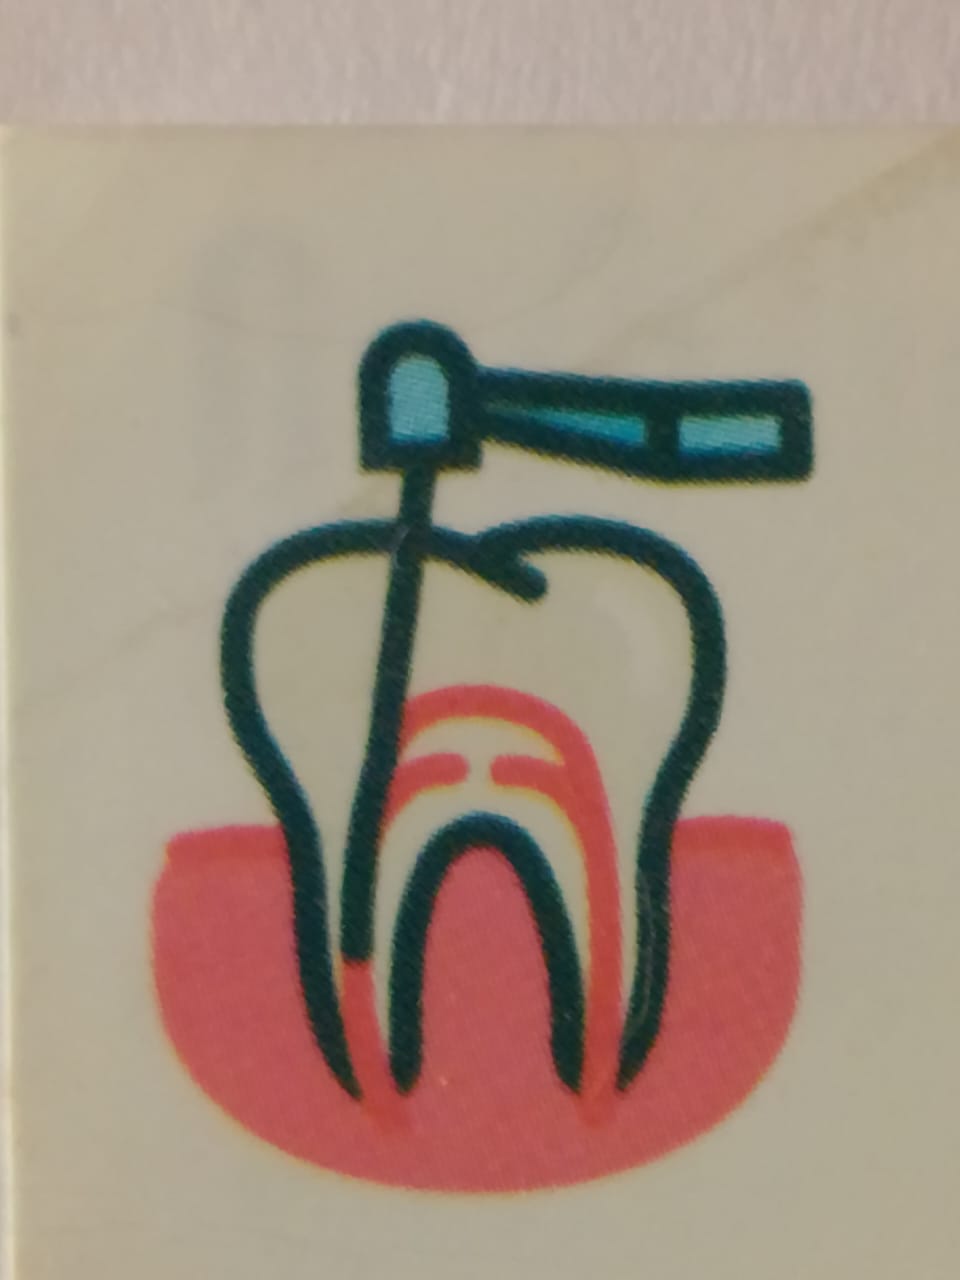 Om dental clinic